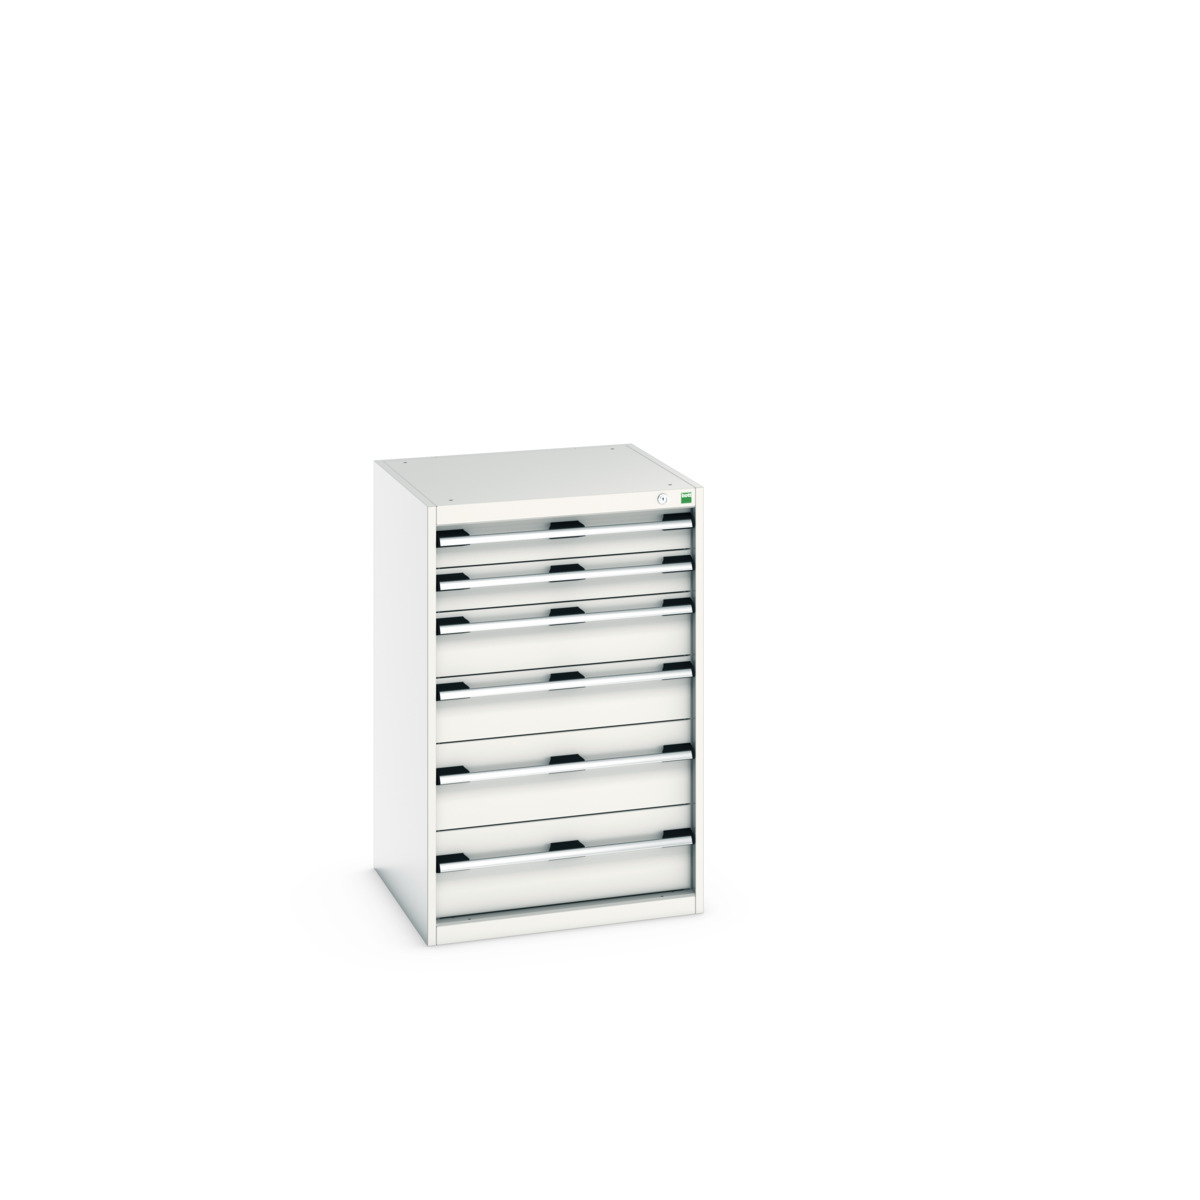 40019059.16V - cubio drawer cabinet